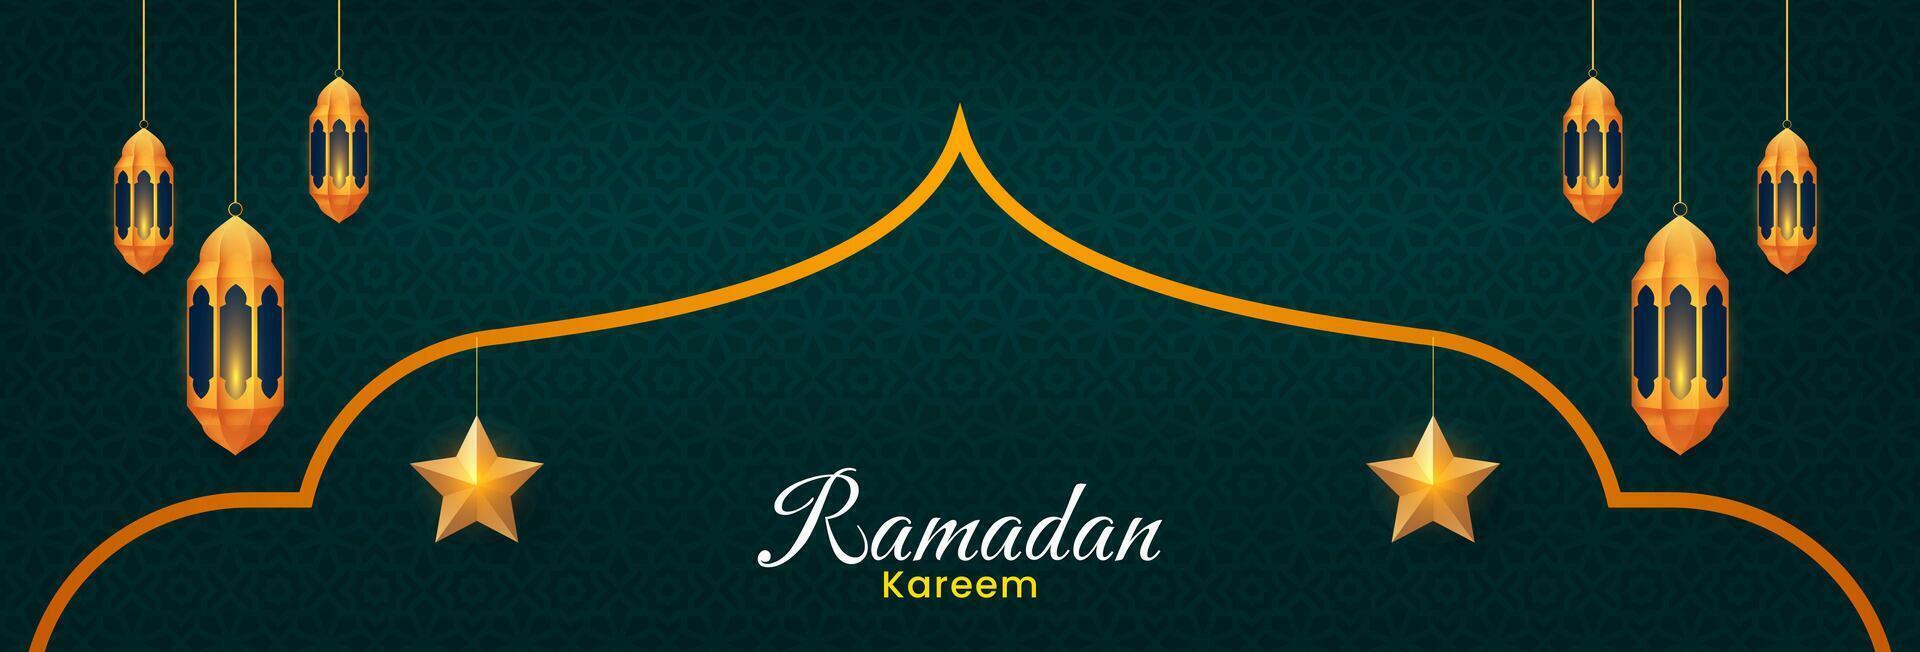 Ramadan kareem banier ontwerp. Islamitisch viering achtergrond met gouden lantaarns, ster ornamenten vector illustratie